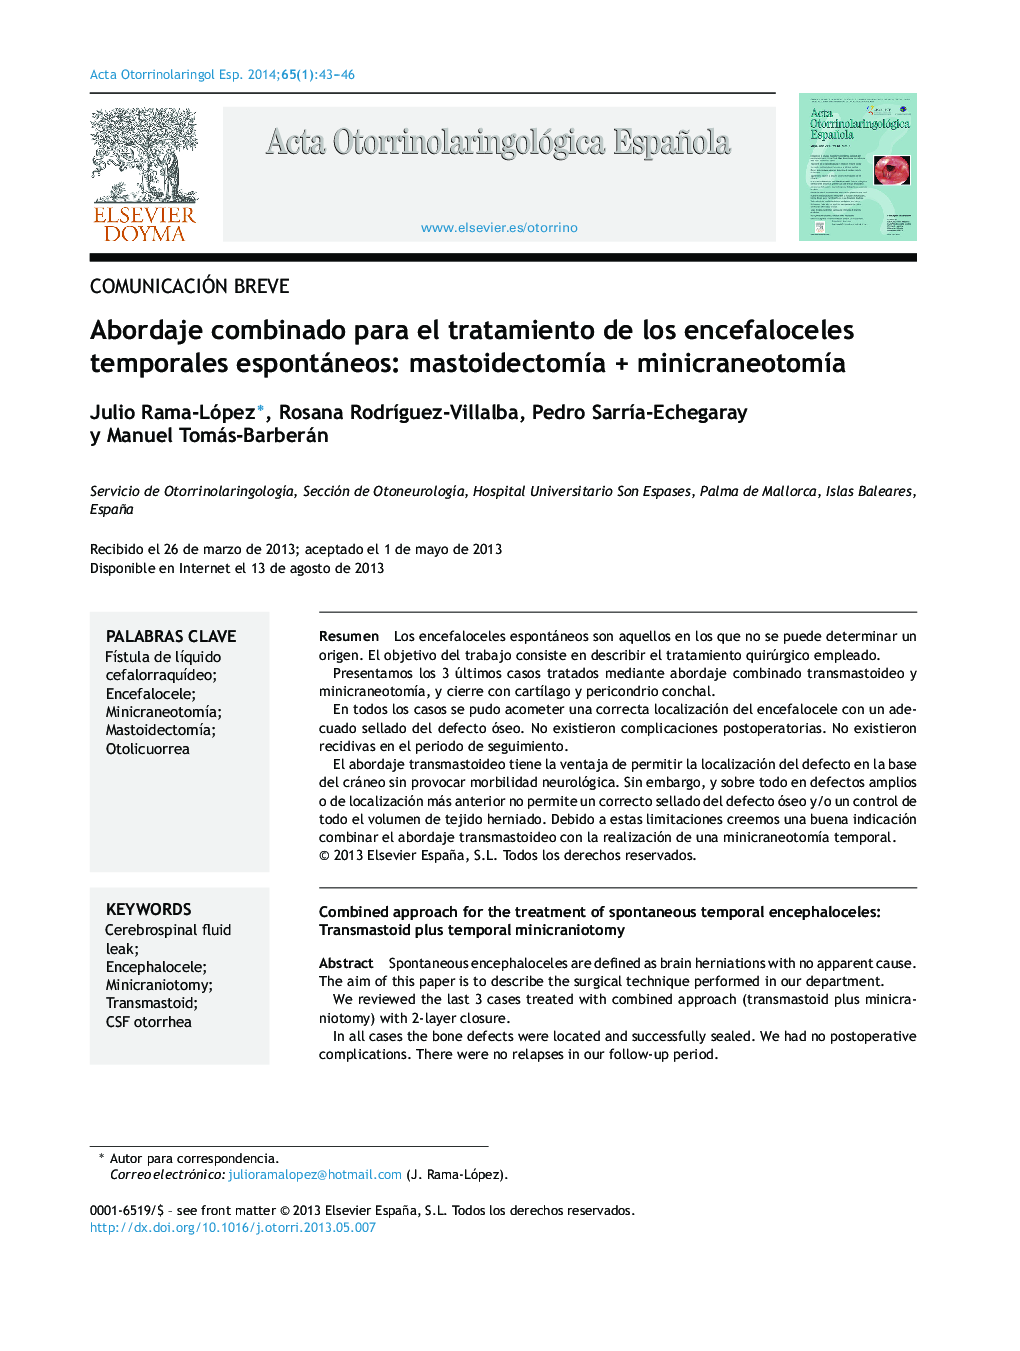 Abordaje combinado para el tratamiento de los encefaloceles temporales espontáneos: mastoidectomÃ­a + minicraneotomÃ­a